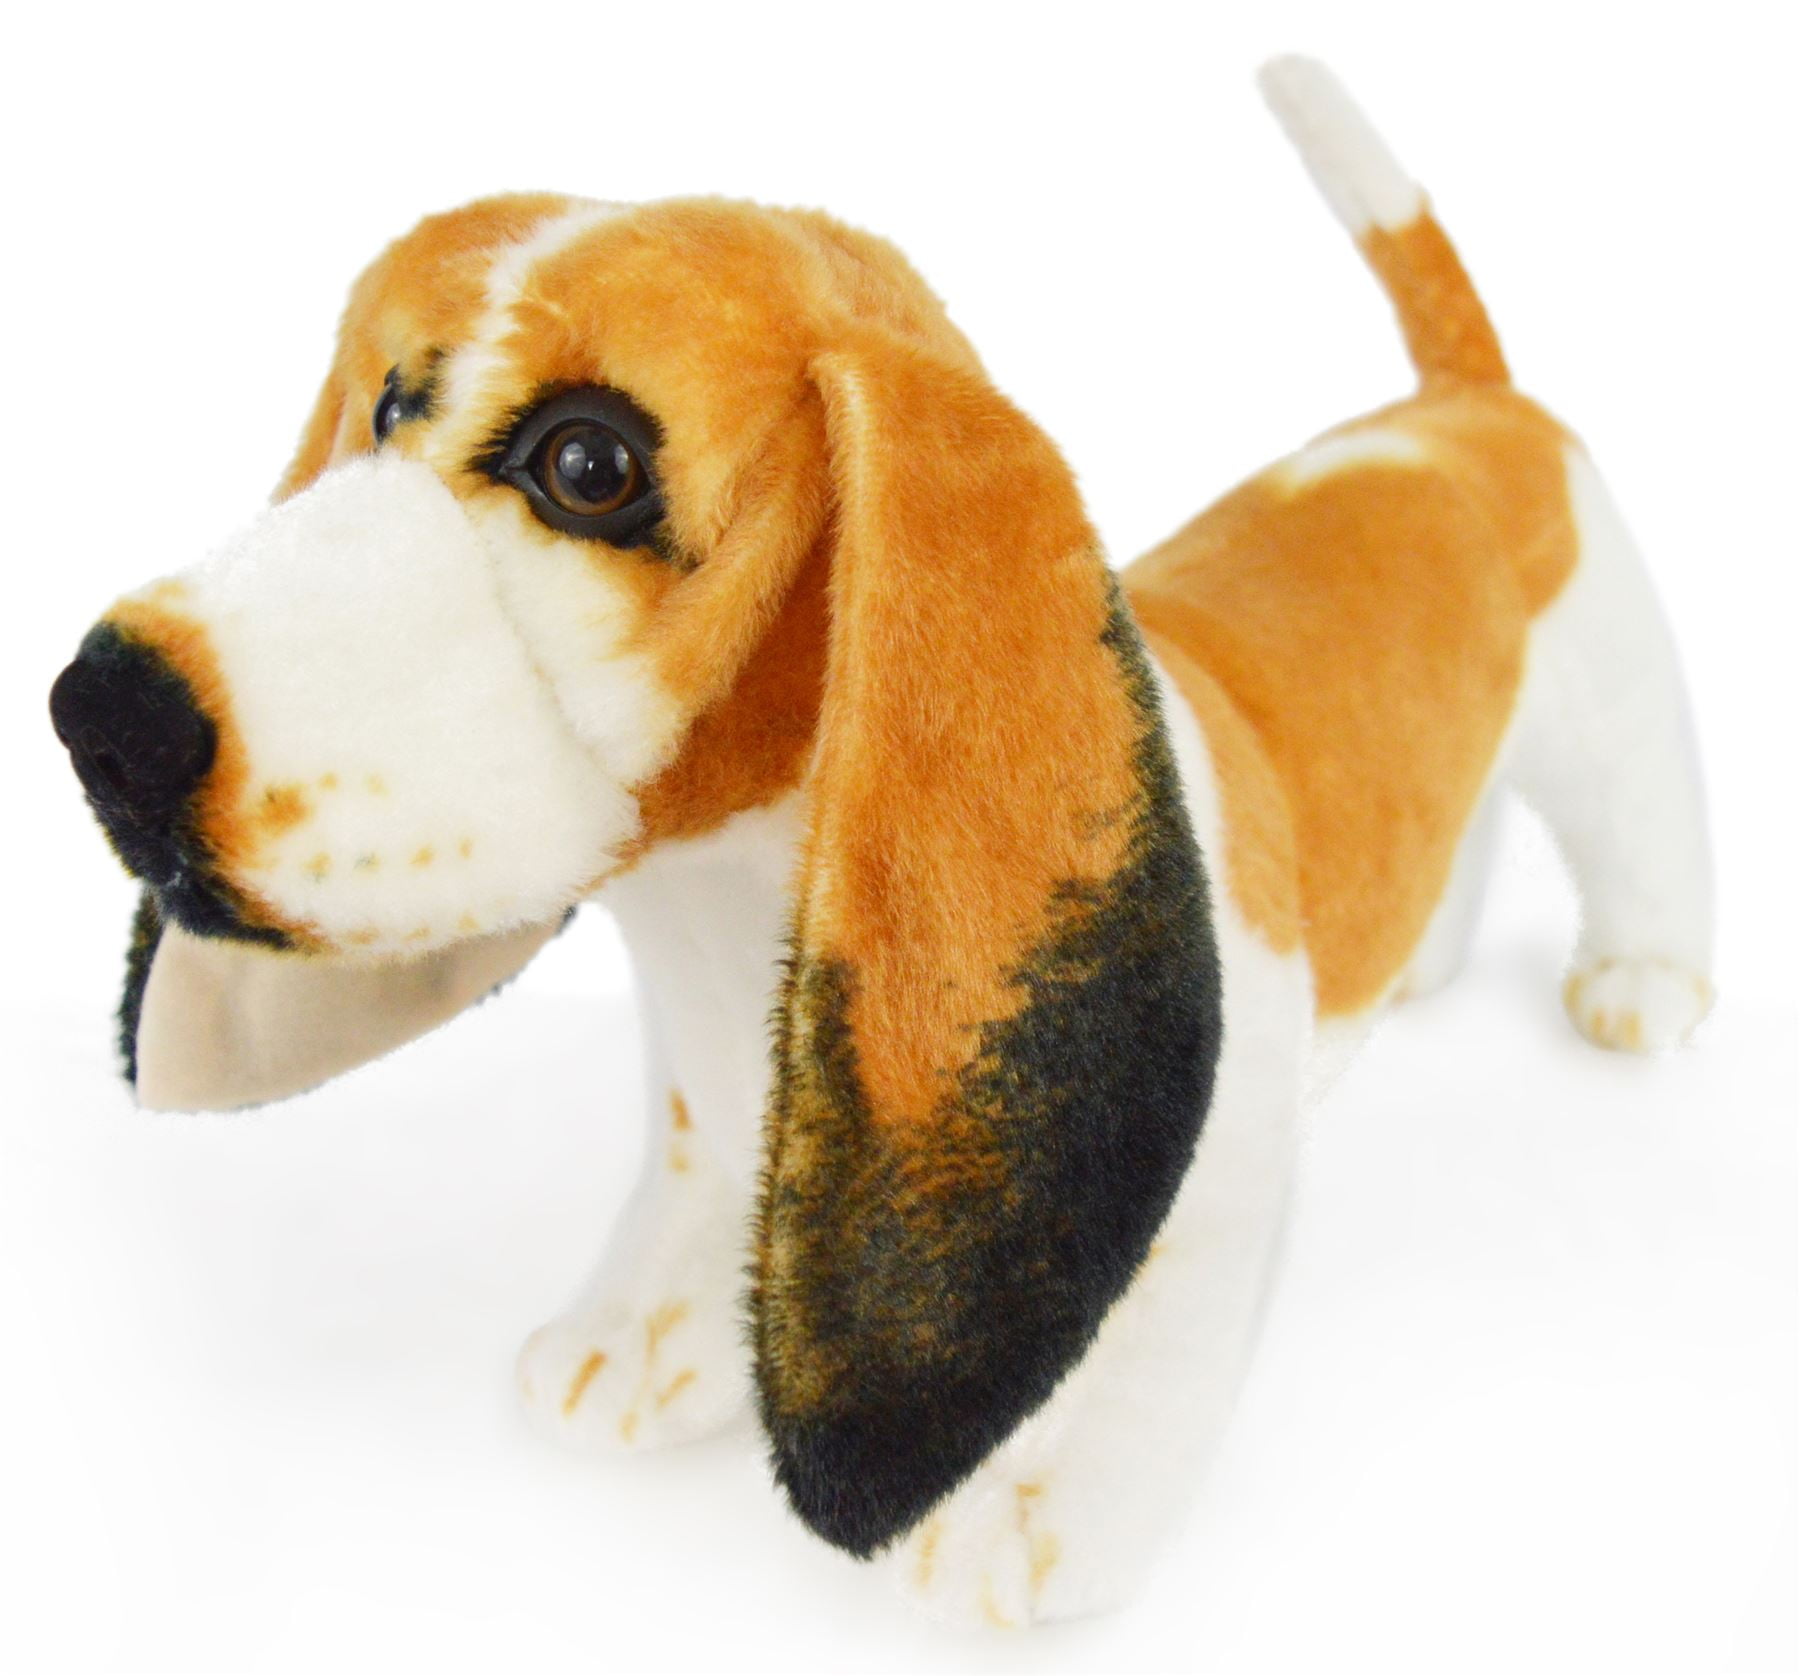 basset hound stuffed animal plush